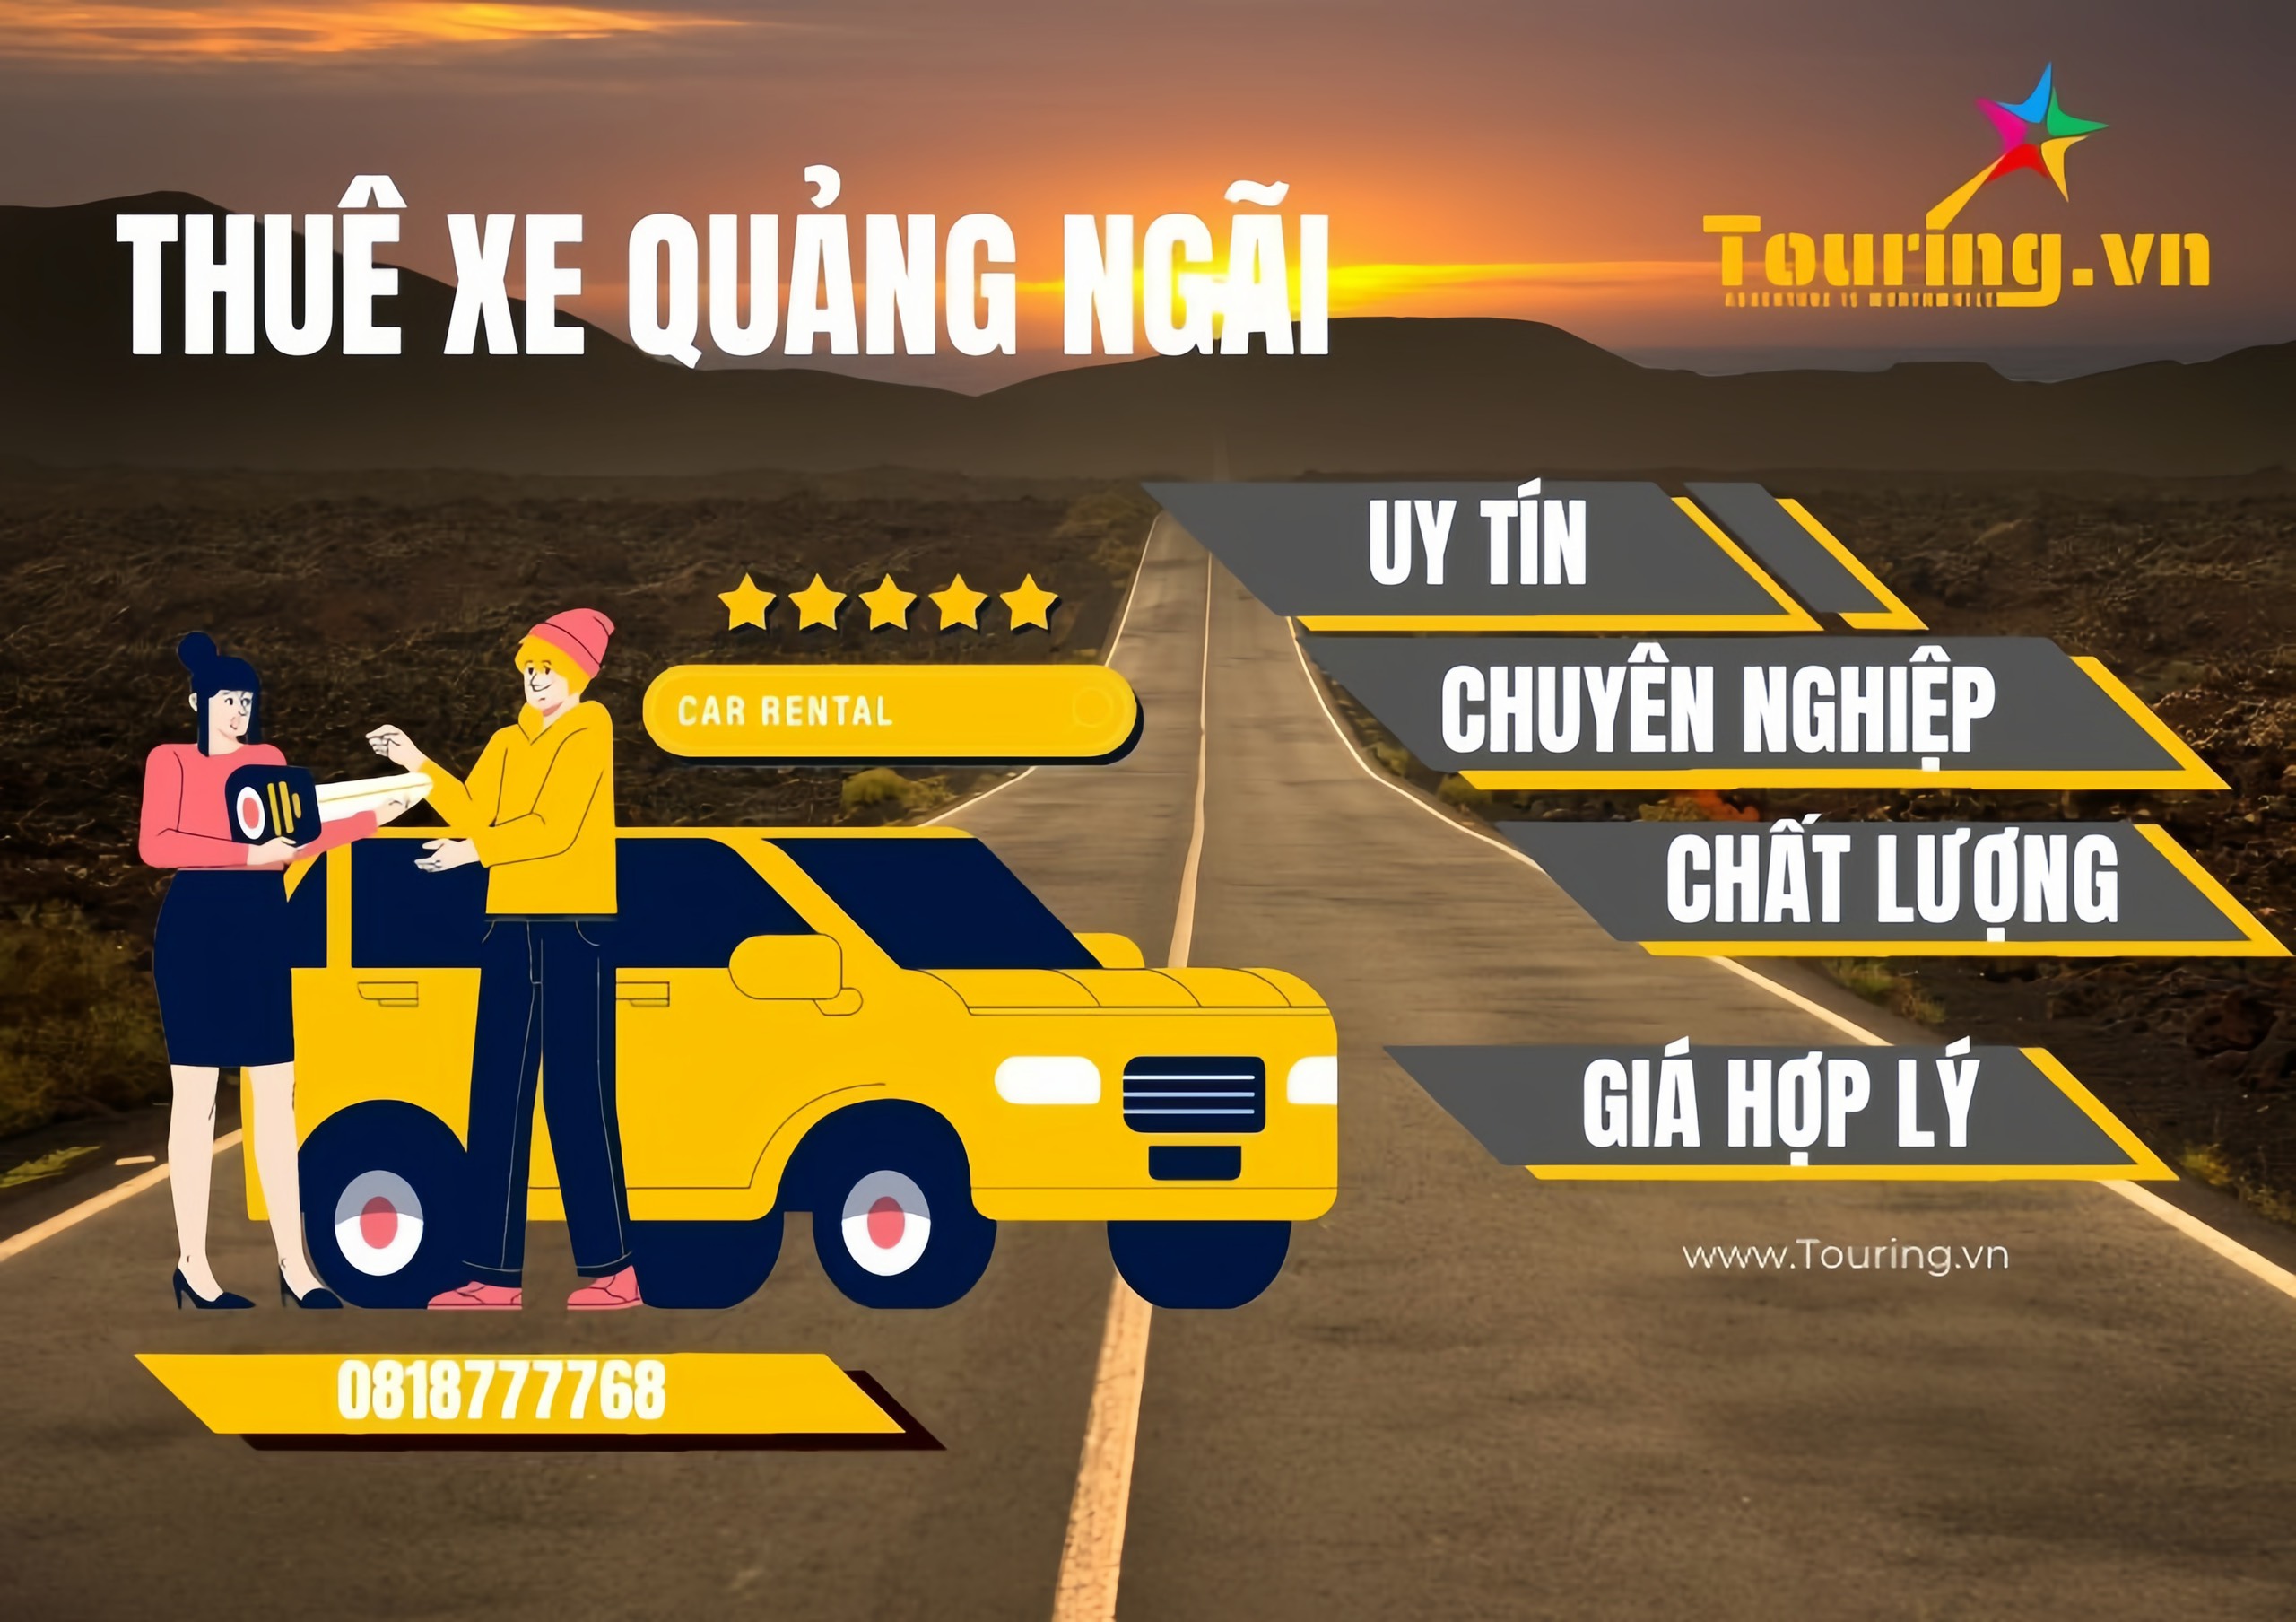 Touring đơn vị cho thuê xe uy tín tại Quảng Ngãi